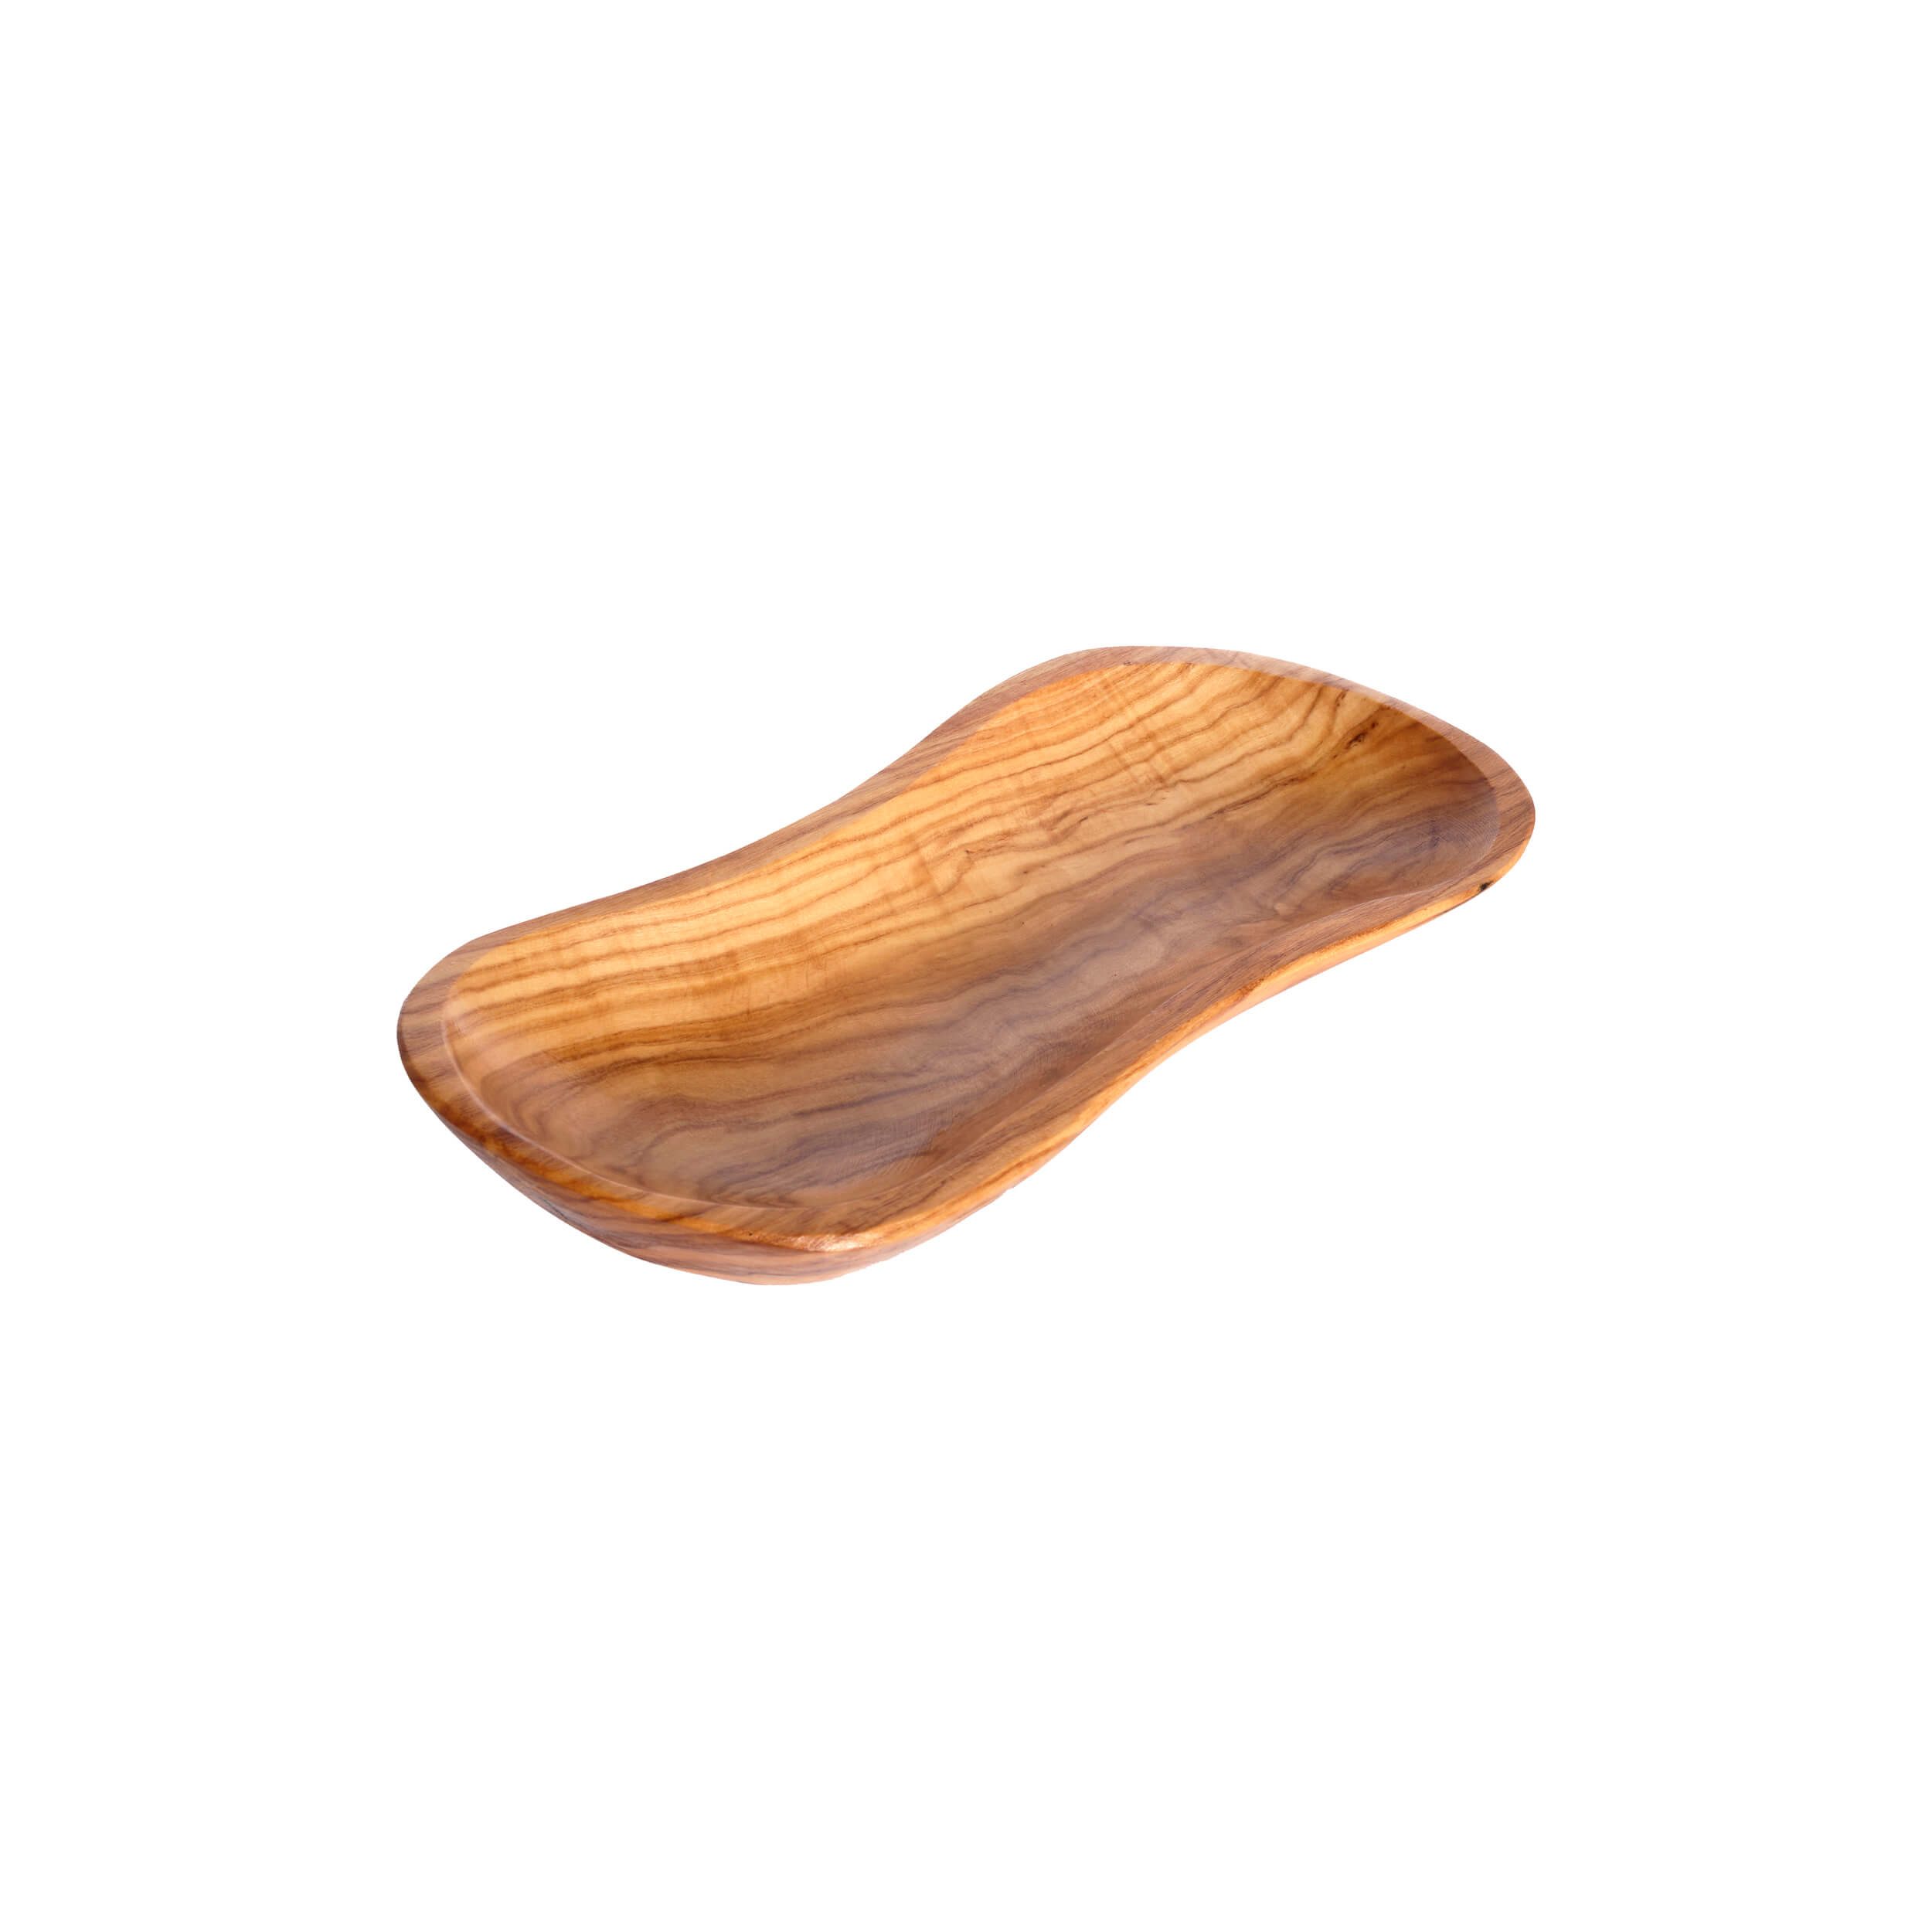 Γαβαθάκι σε Σχήμα S 'Mavridis Wooden Products' 151gr